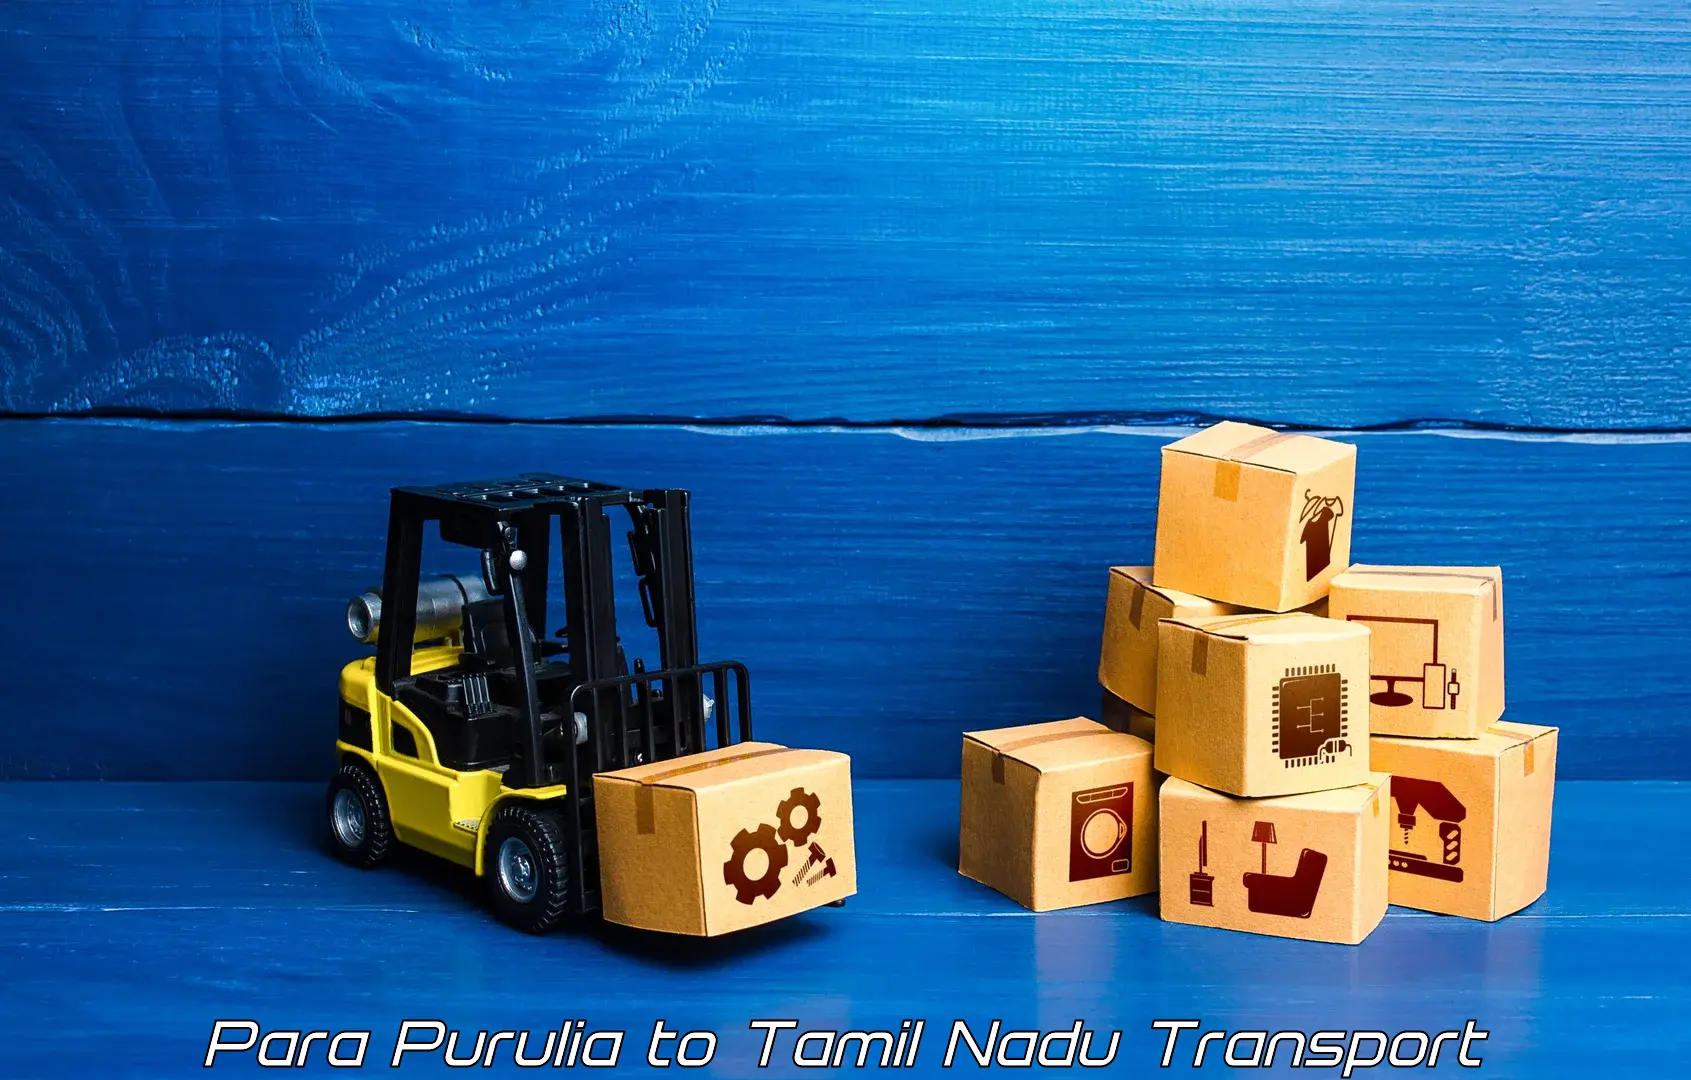 Nationwide transport services Para Purulia to Kumbakonam